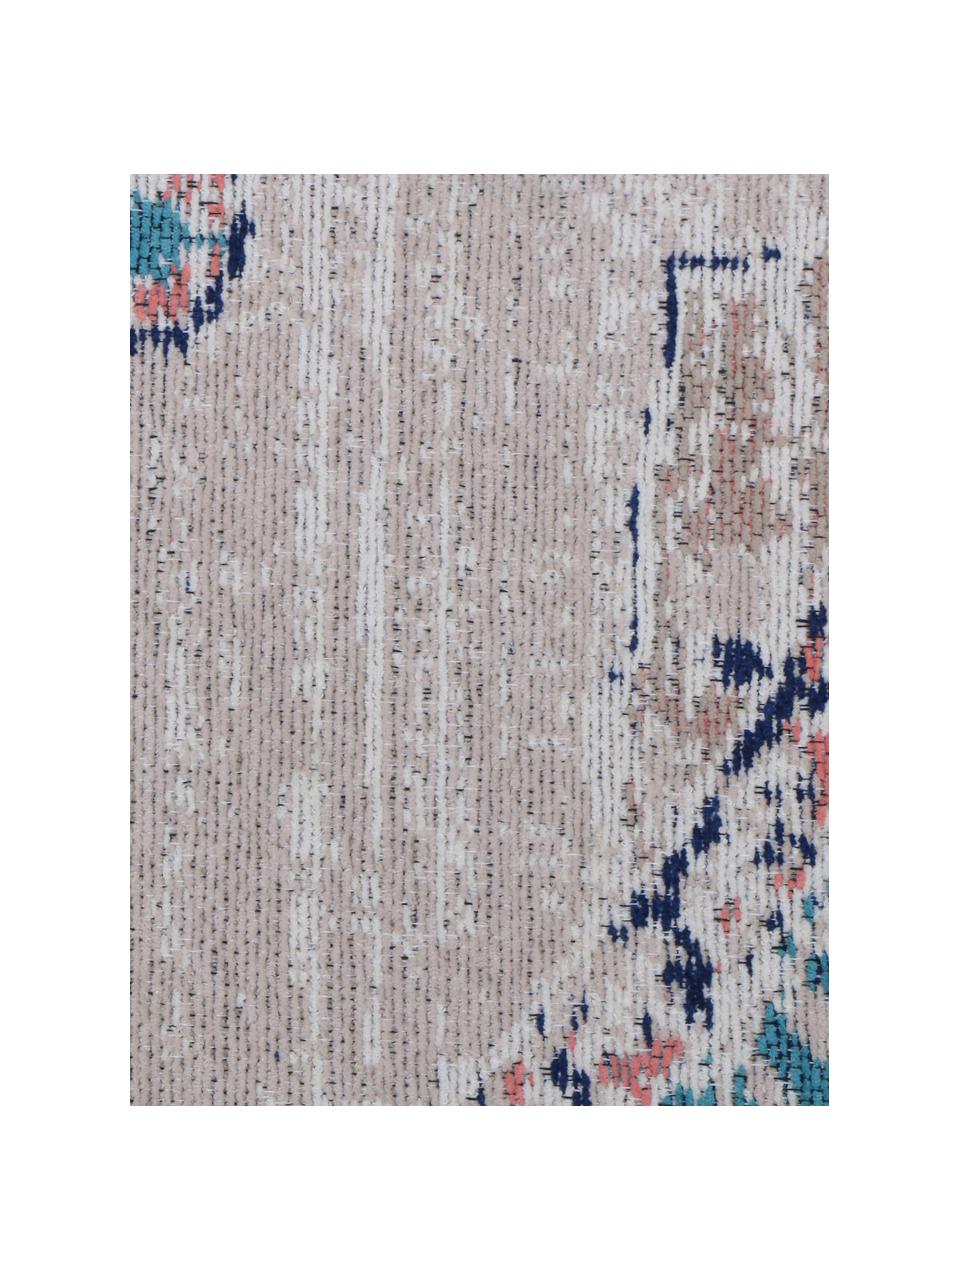 Okrągły dywan szenilowy w stylu vintage Avignon, Niebieski, Ø 120 cm (Rozmiar S)